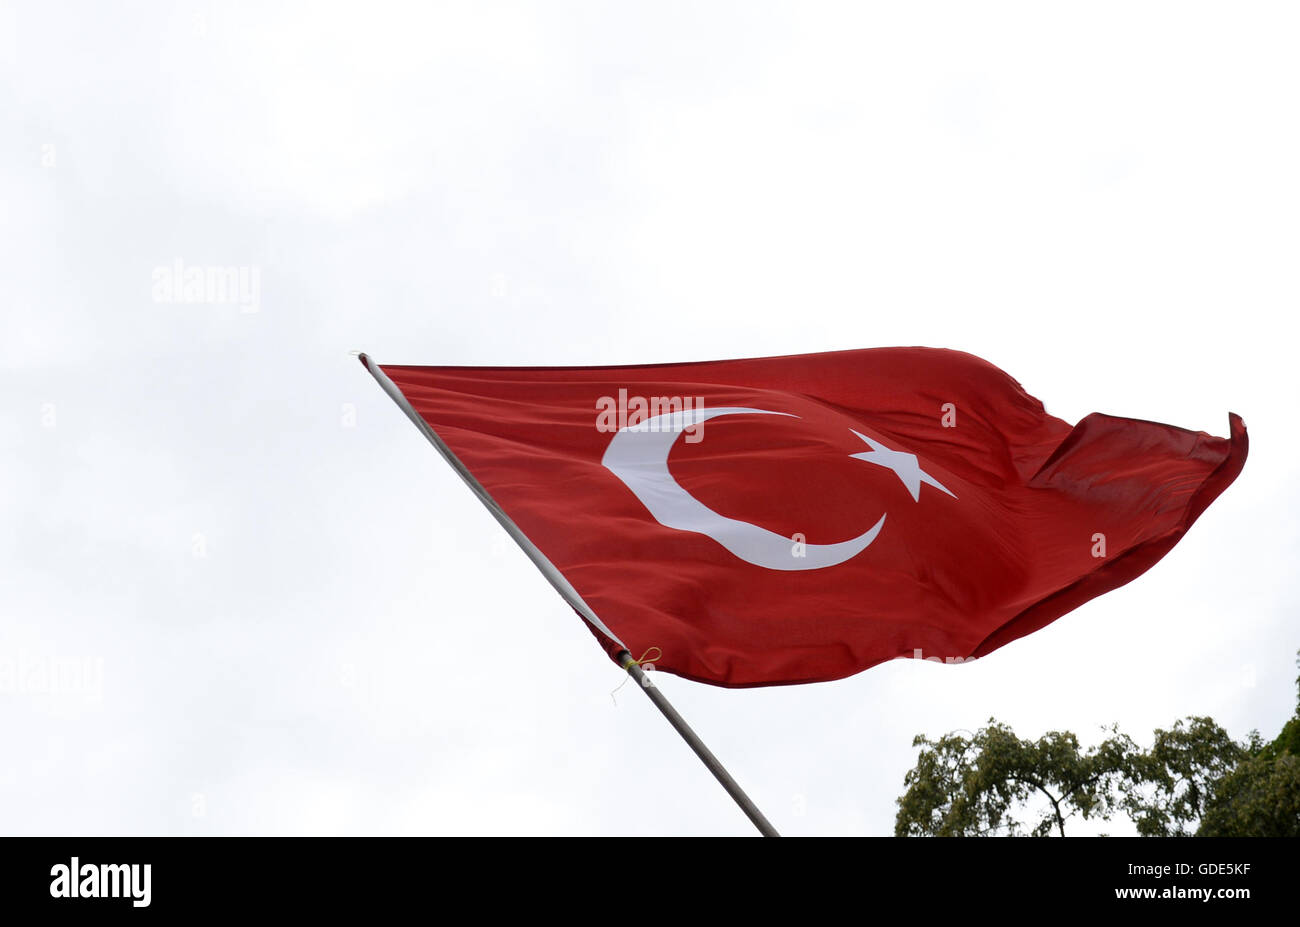 Berlino, Germania. 16 Luglio, 2016. Una bandiera turca nella foto a una dimostrazione al di fuori dell'Ambasciata turca a Berlino, Germania, 16 luglio 2016. Secondo la polizia, 500 persone hanno manifestato contro il colpo di stato militare in Turchia. Foto: PAOLO ZINKEN/DPA/Alamy Live News Foto Stock